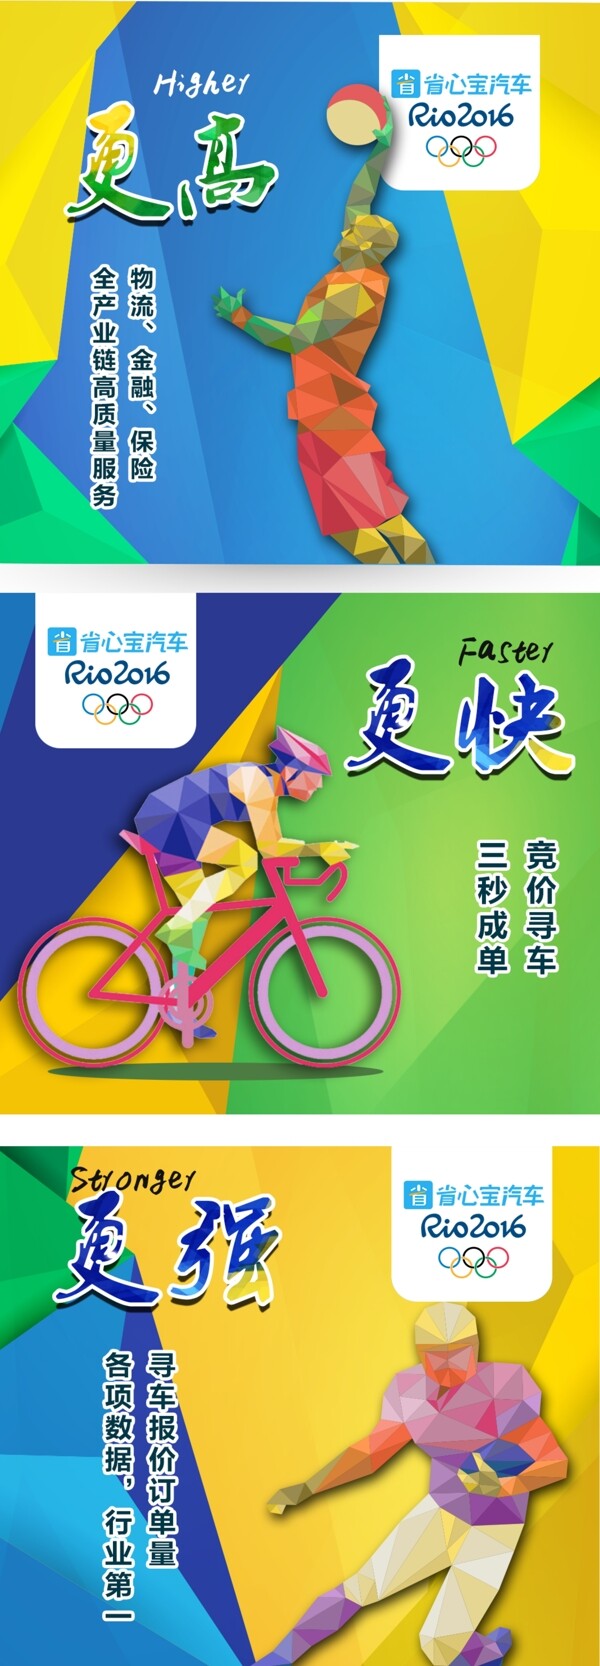 奥运主题更高更强更快宣传海报平面设计